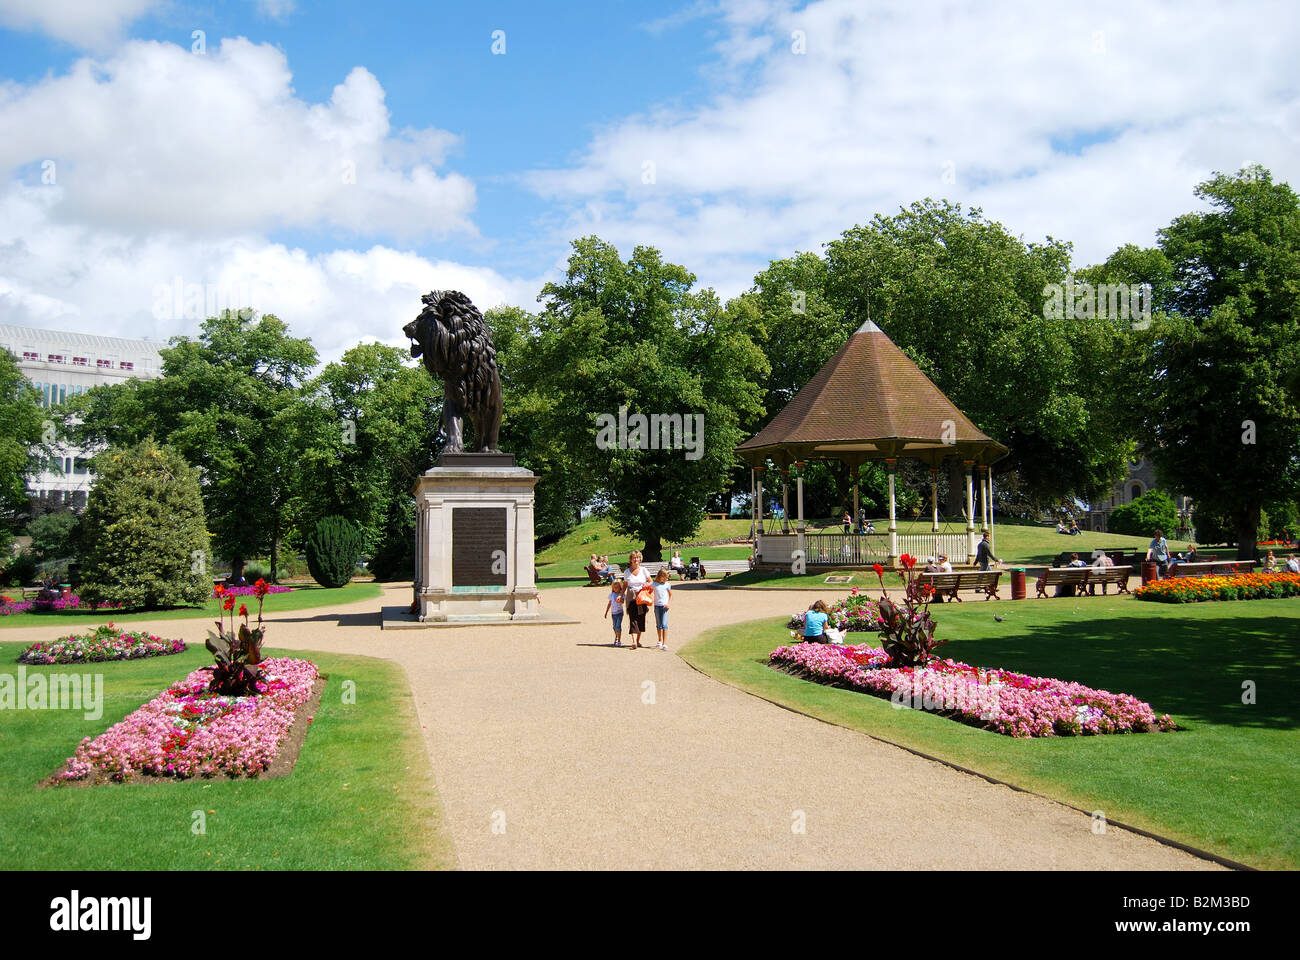 Statue de lion et kiosque à musique, Forbury Gardens, Reading, Berkshire, Angleterre, Royaume-Uni Banque D'Images